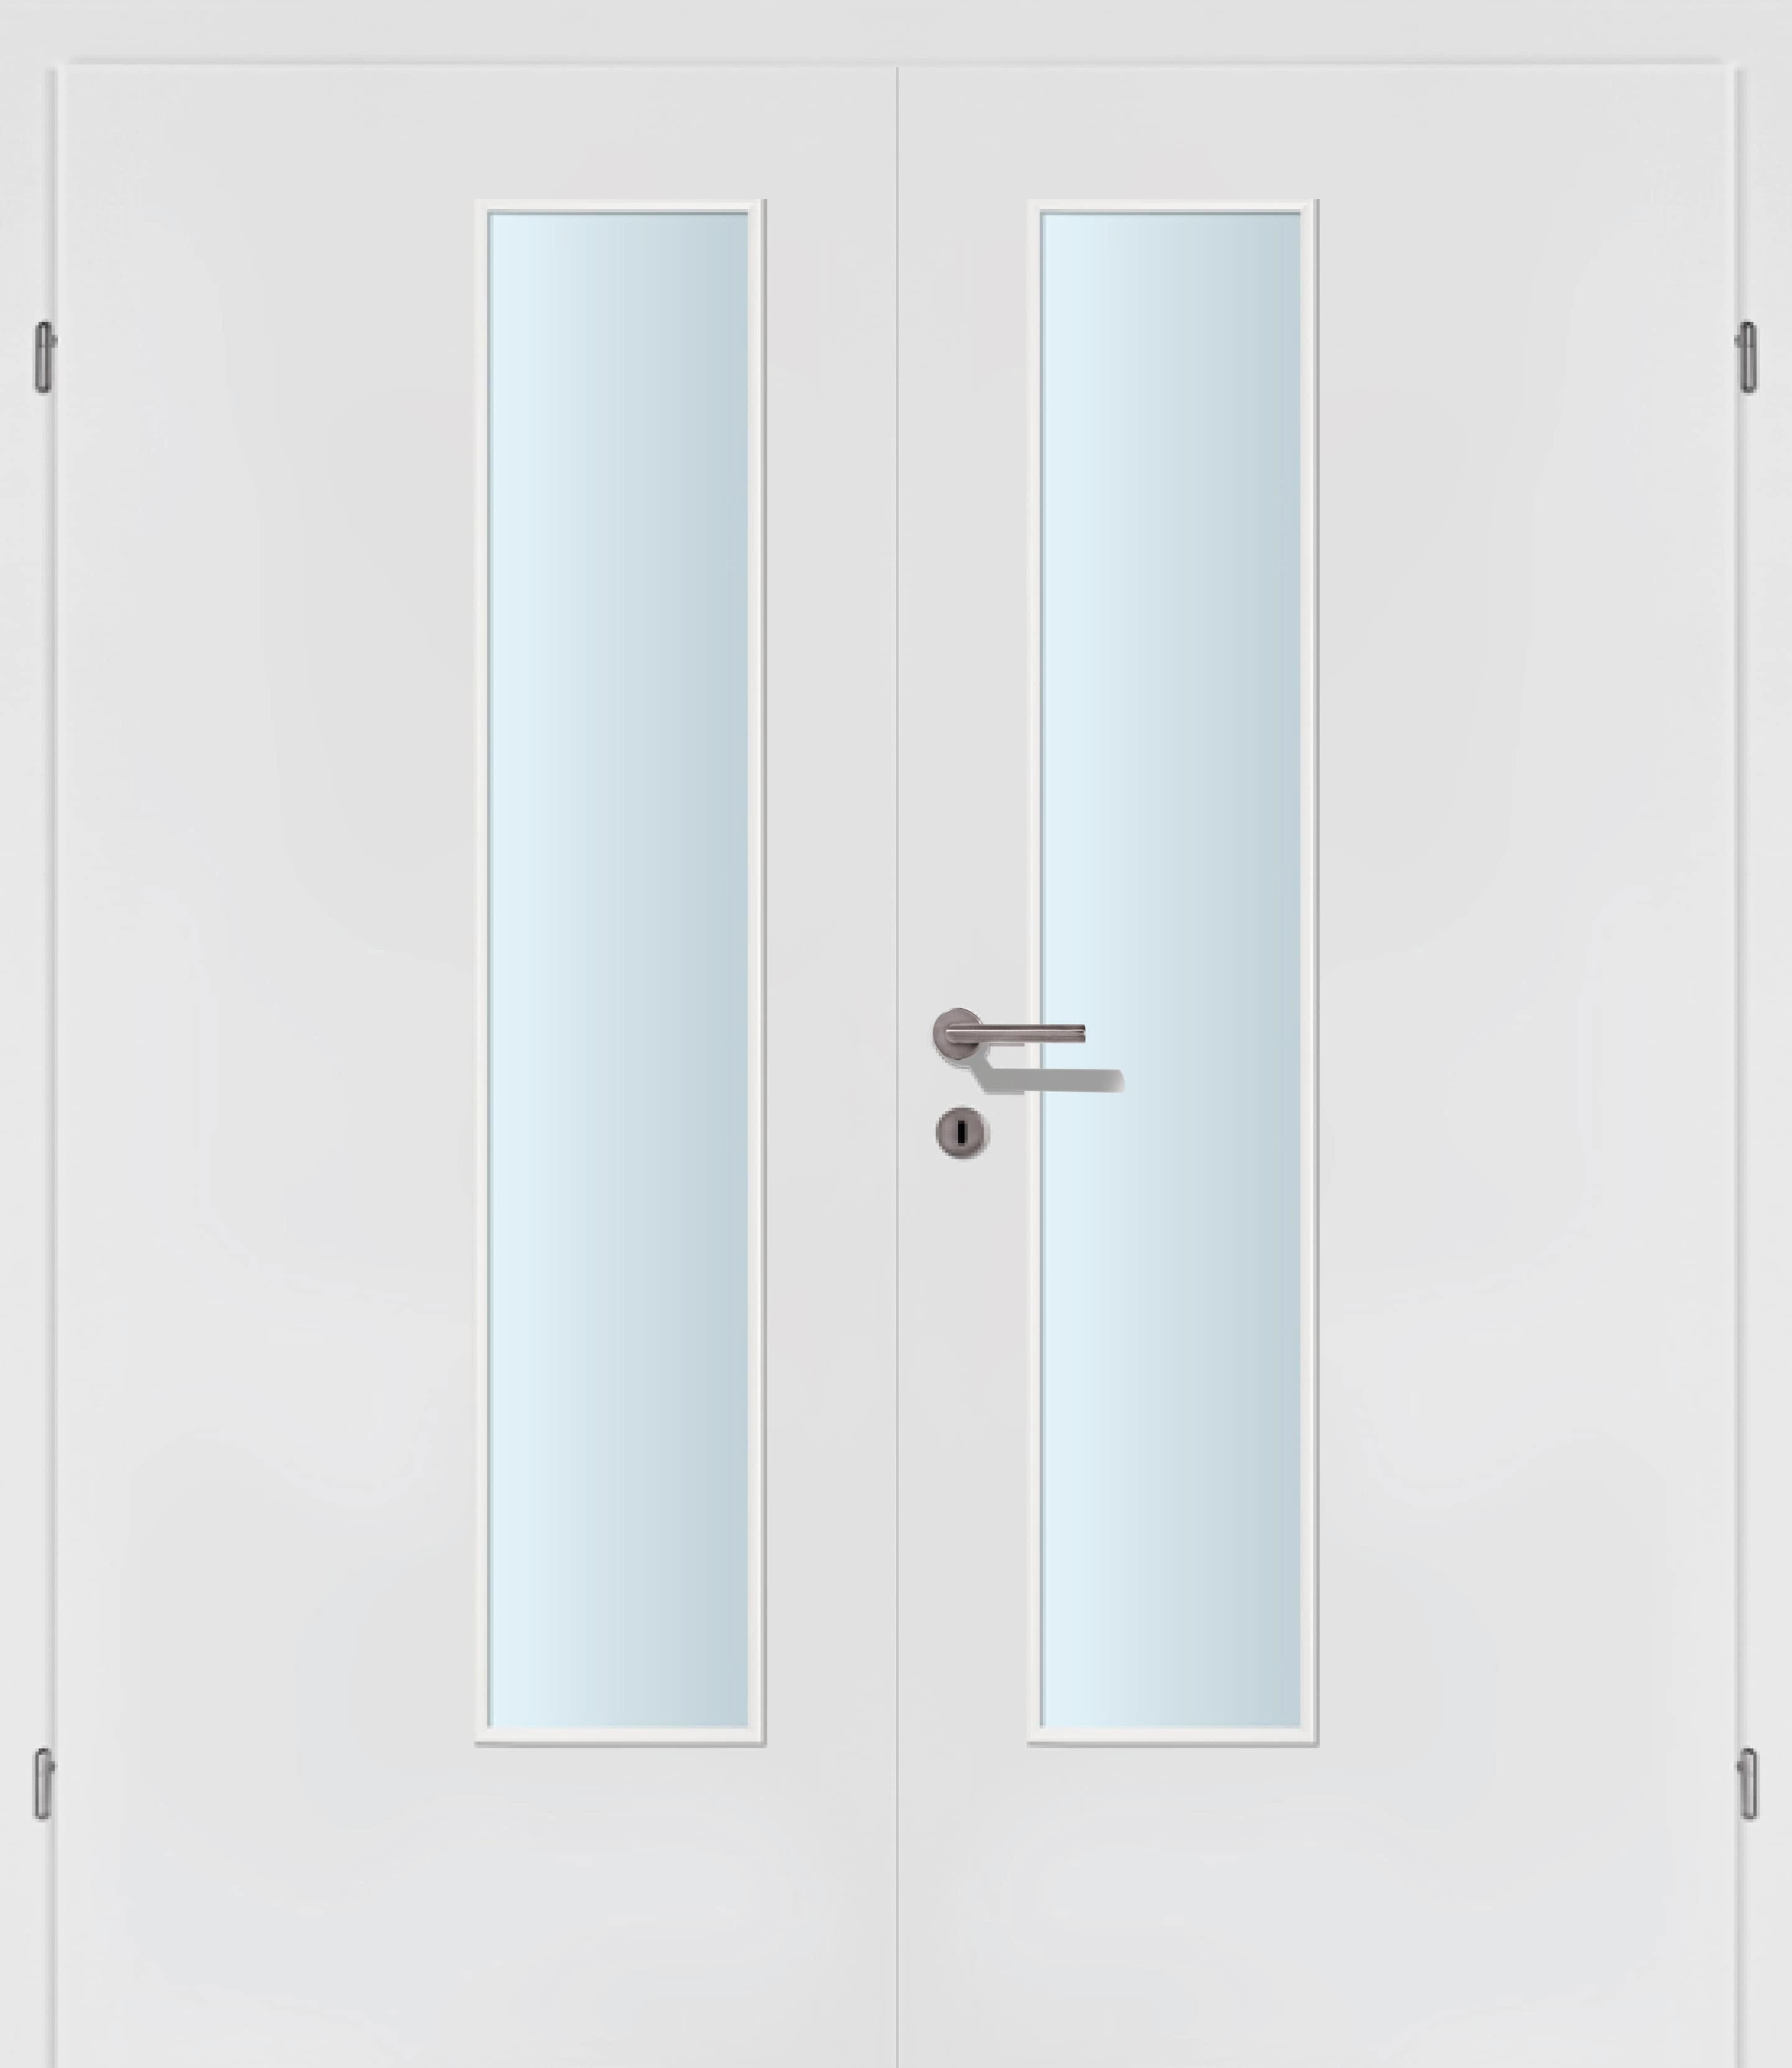 Selektion weiss Innentür Inkl. Zarge (Türrahmen) Doppeltüre Inkl. Glaslichte EN Drückerseitig